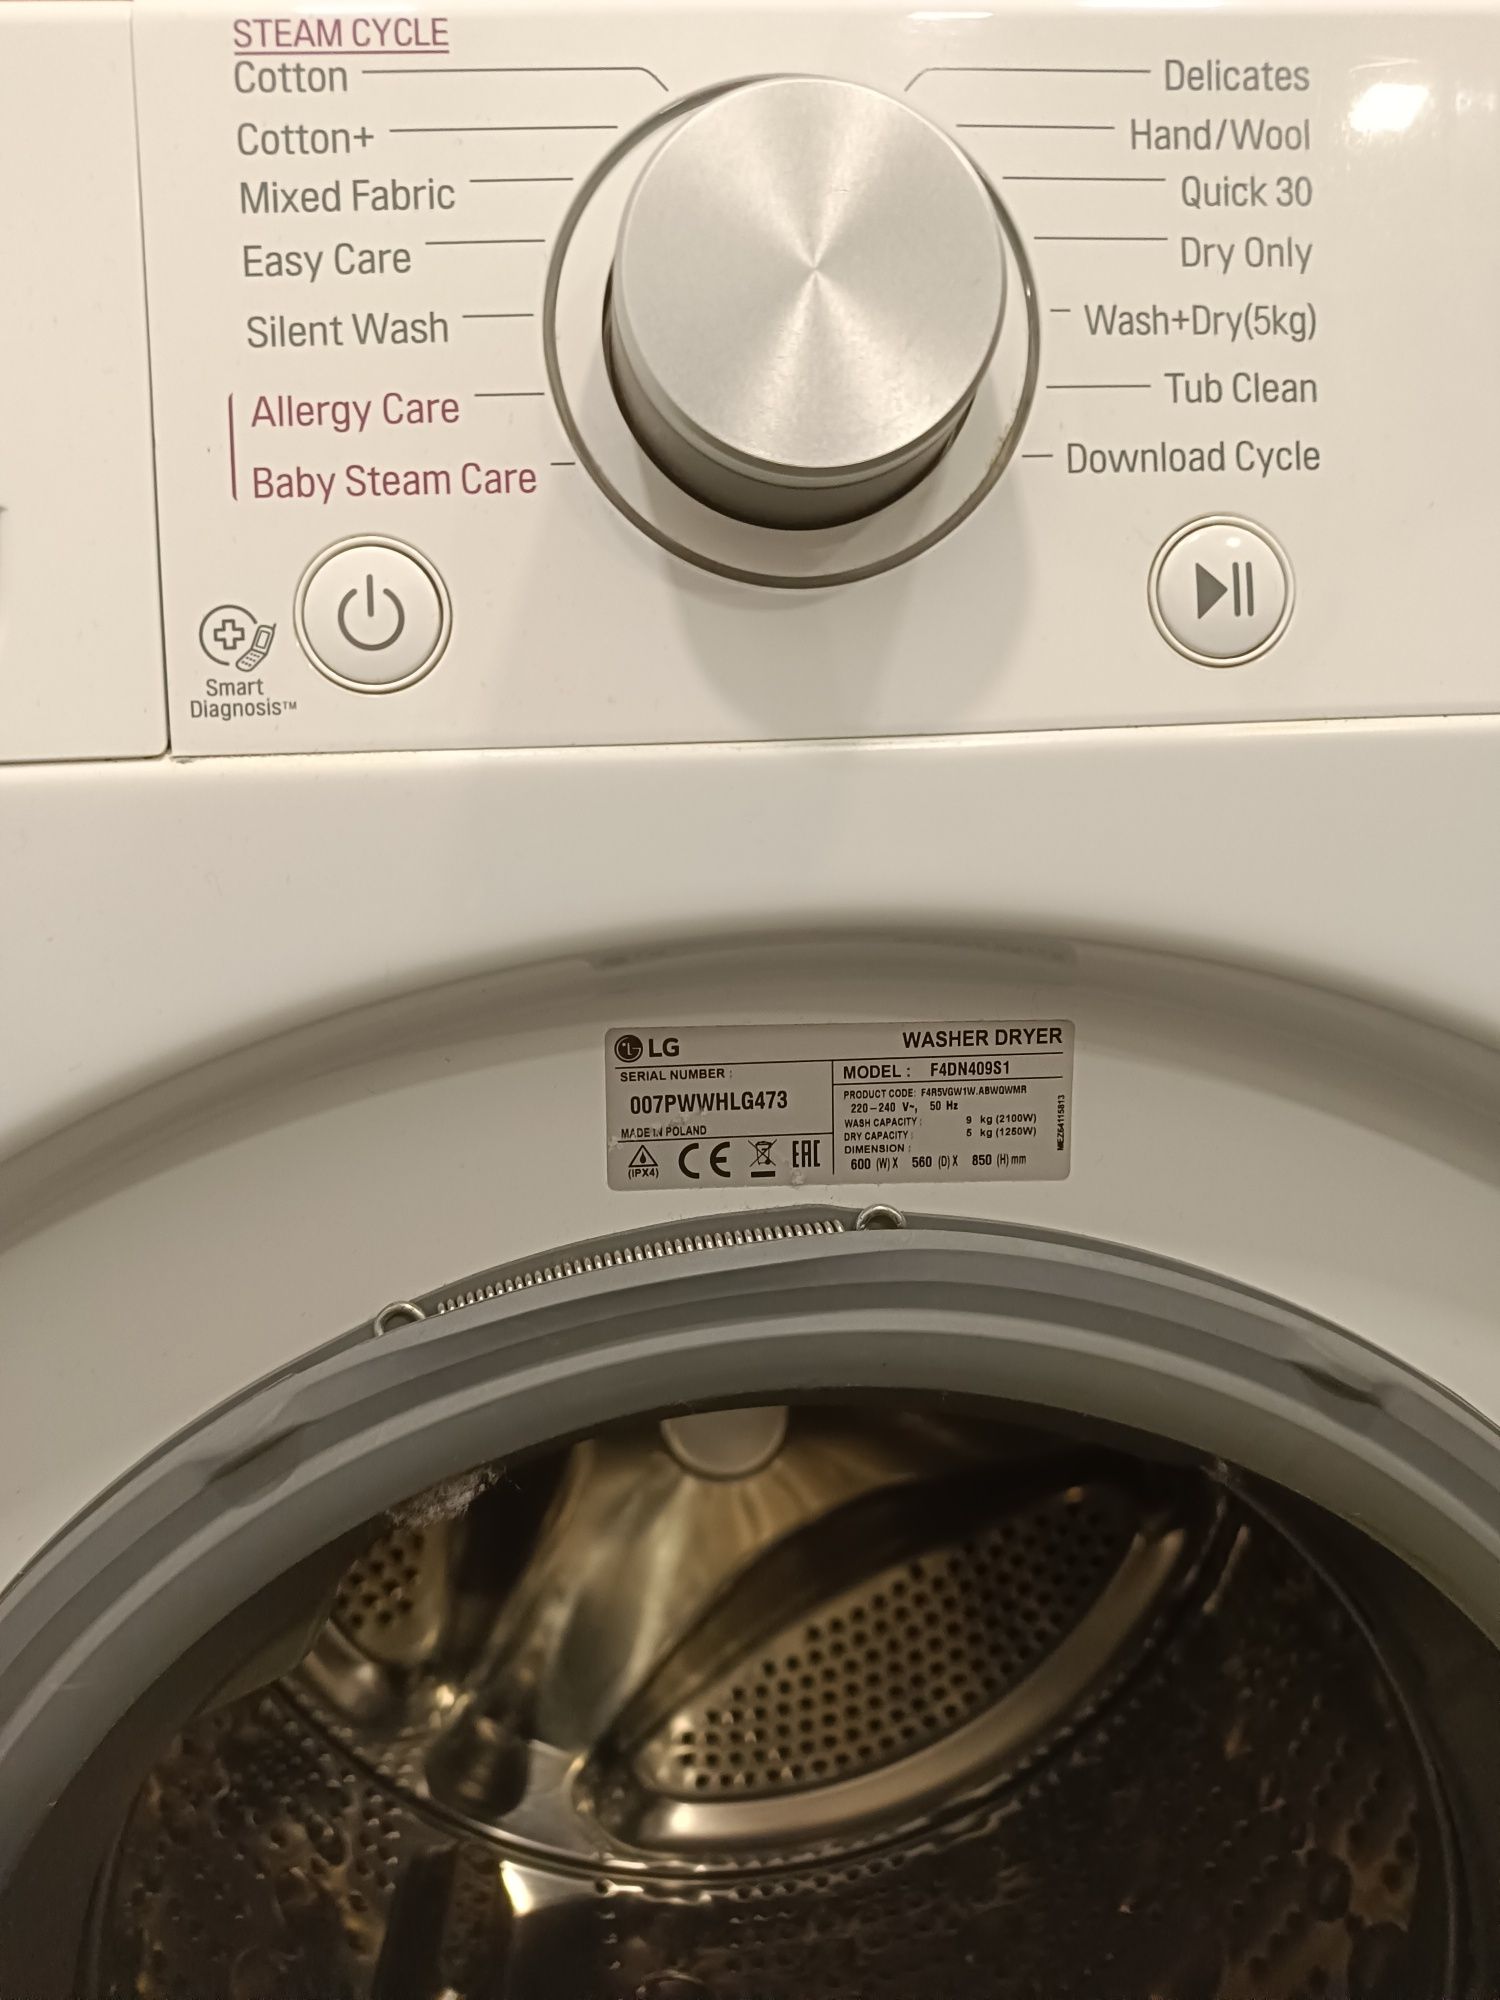 Vând mașină de spălat rufe  cu uscător LG, 9/5 kg, clasa A++